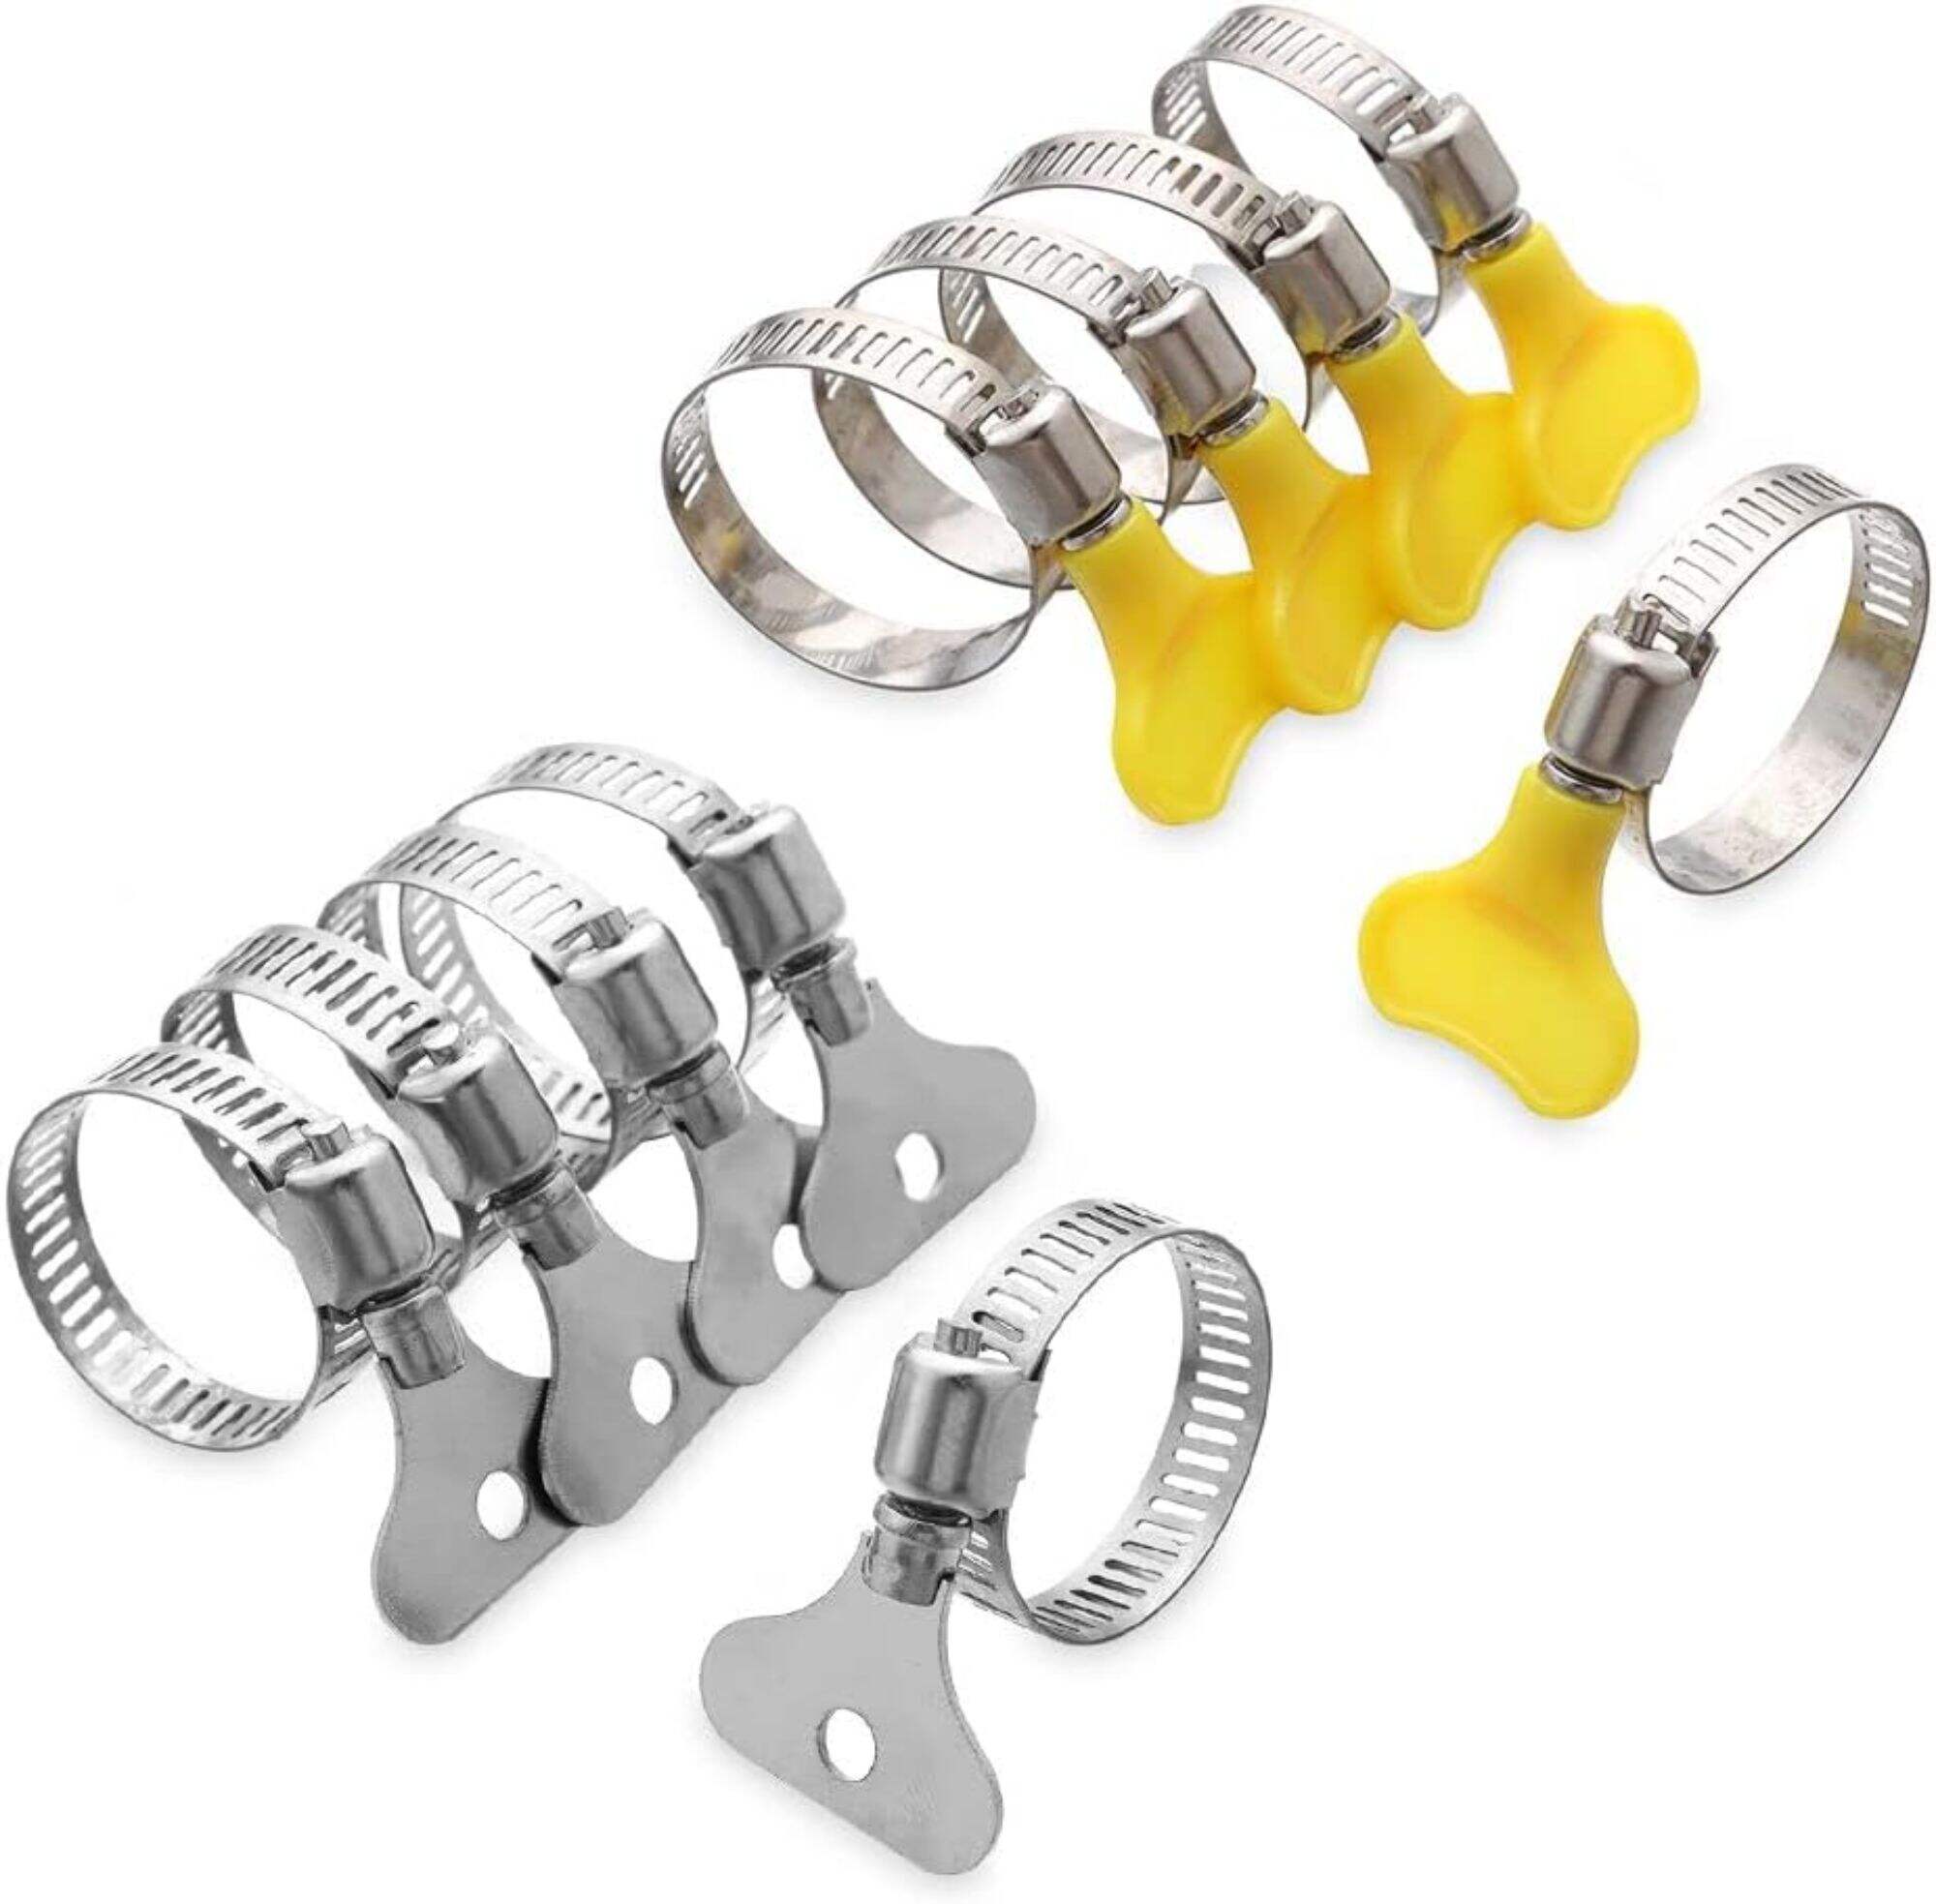 Type de colliers de serrage avec poignée, colliers de serrage en métal et plastique